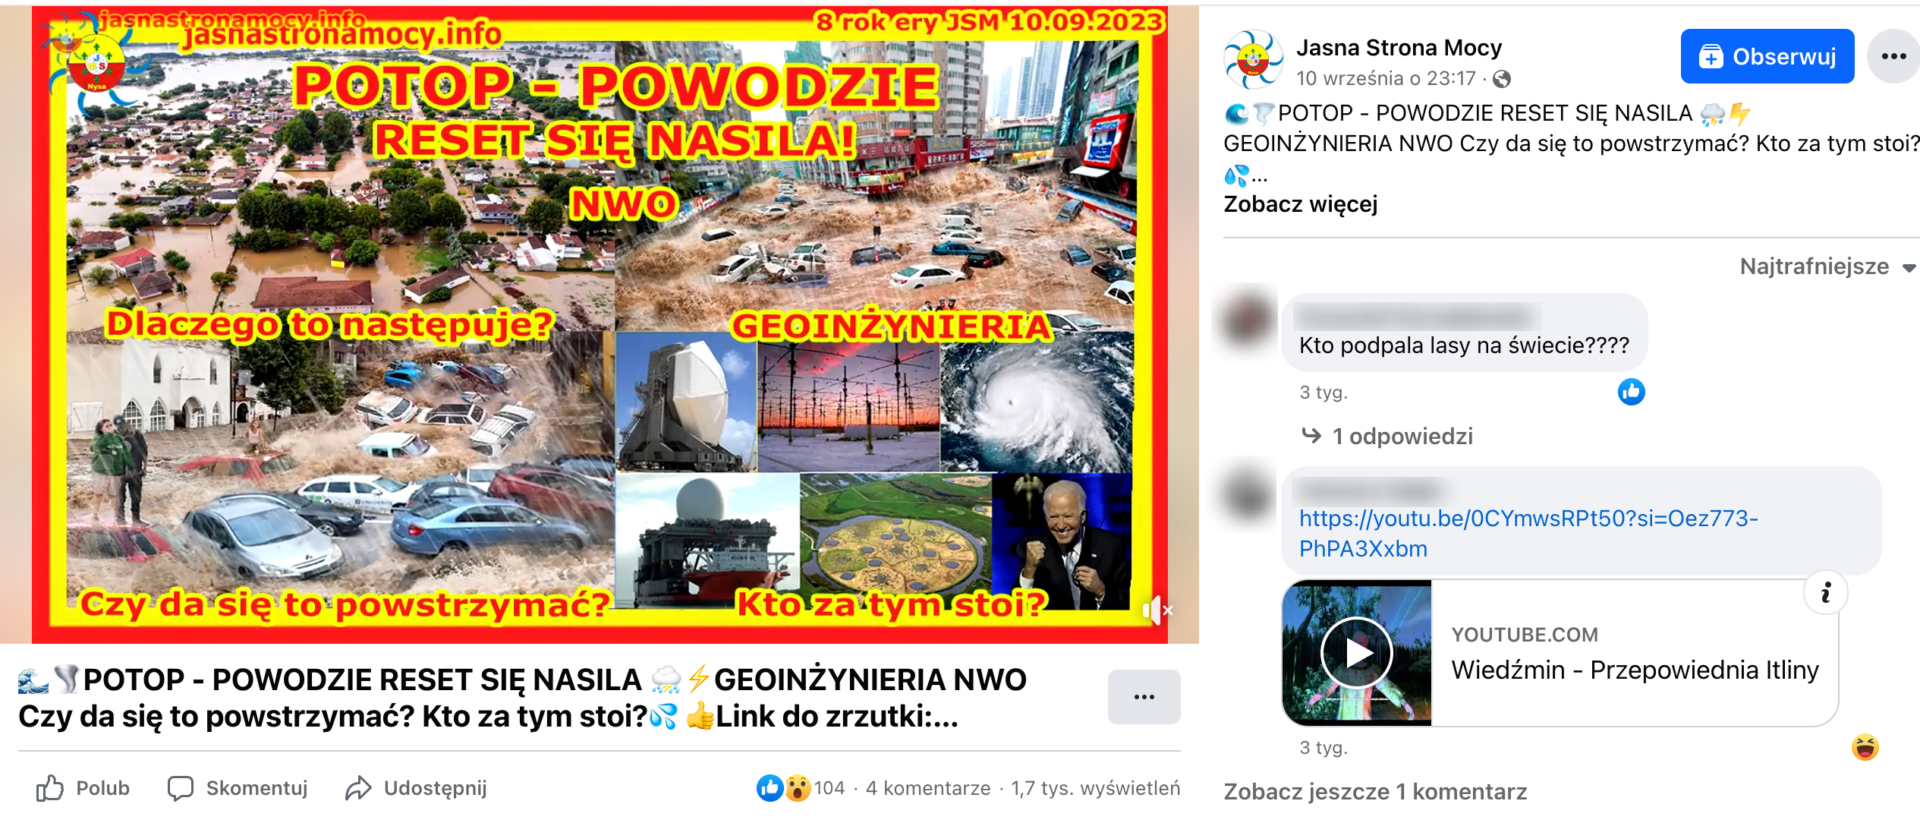 Zrzut ekranu posta na Facebooku. W kadrze omawianego filmu jest grafika okładkowa używająca jaskrawej, żółto-czerwonej czcionki. Wykorzystuje zdjęcia przedstawiające powódź w mieście, anteny, huragan oraz uśmiechniętego Joe Bidena.